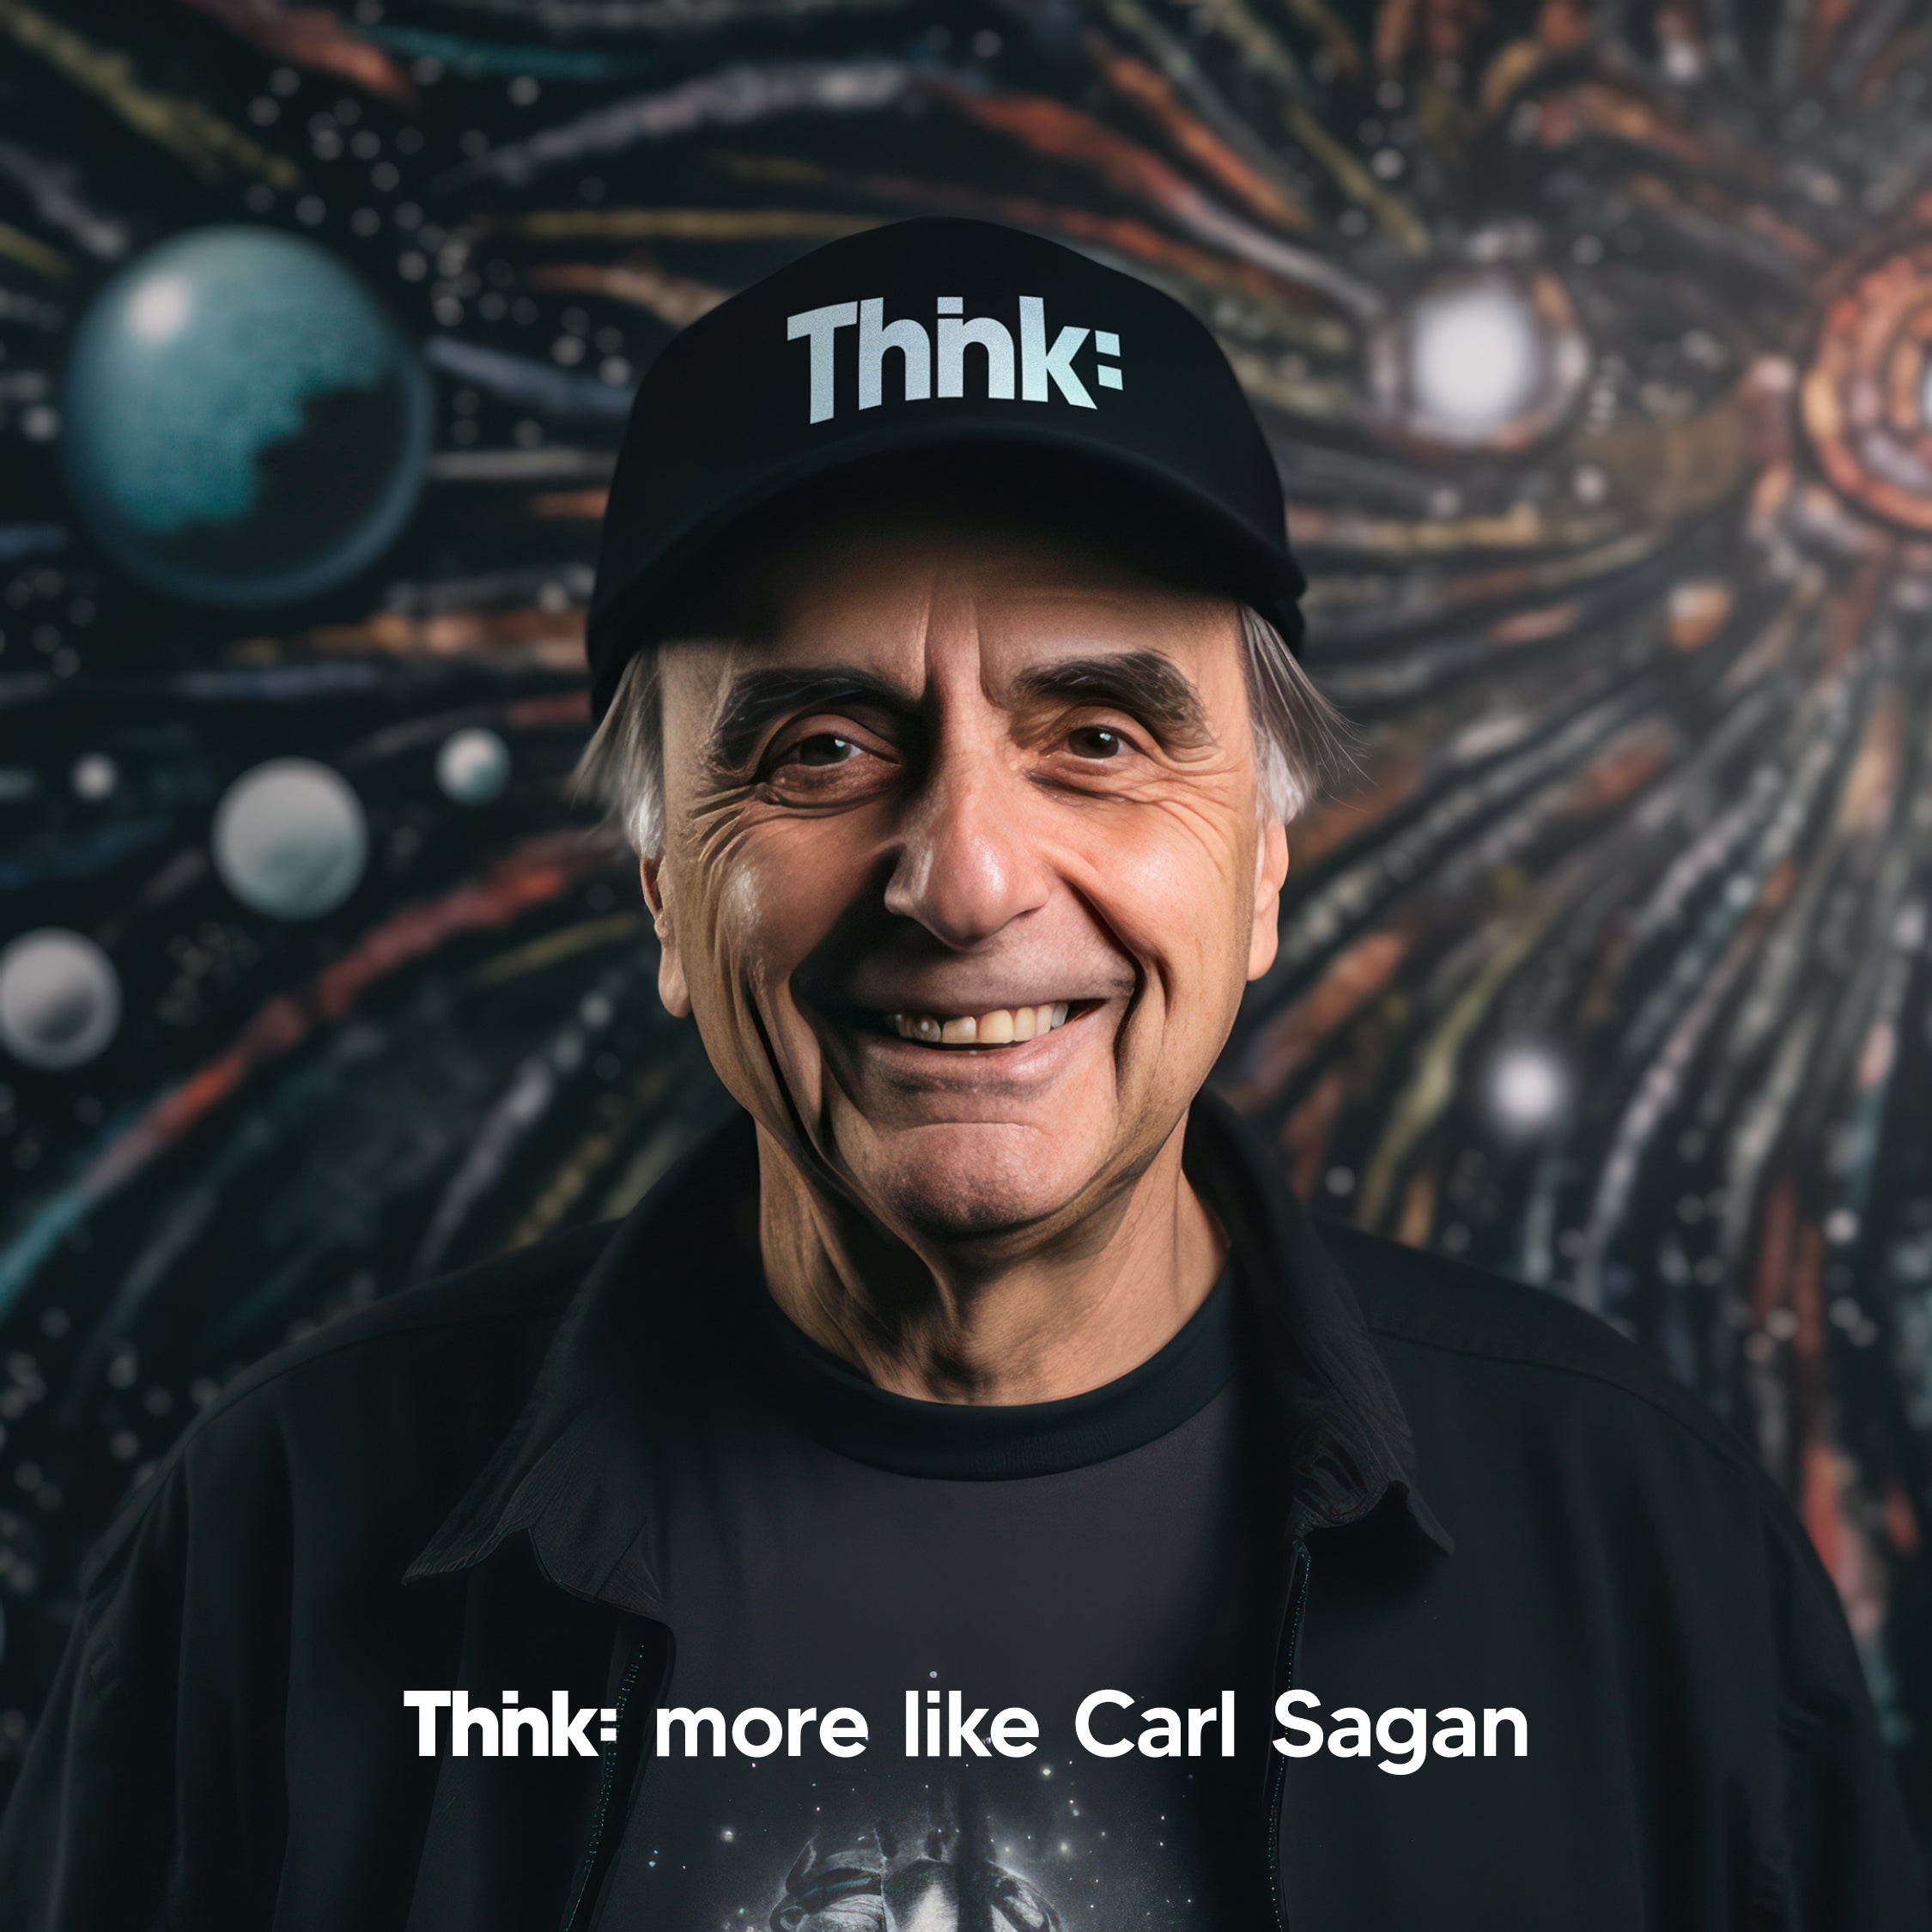 Thnk: More Like Carl Sagan